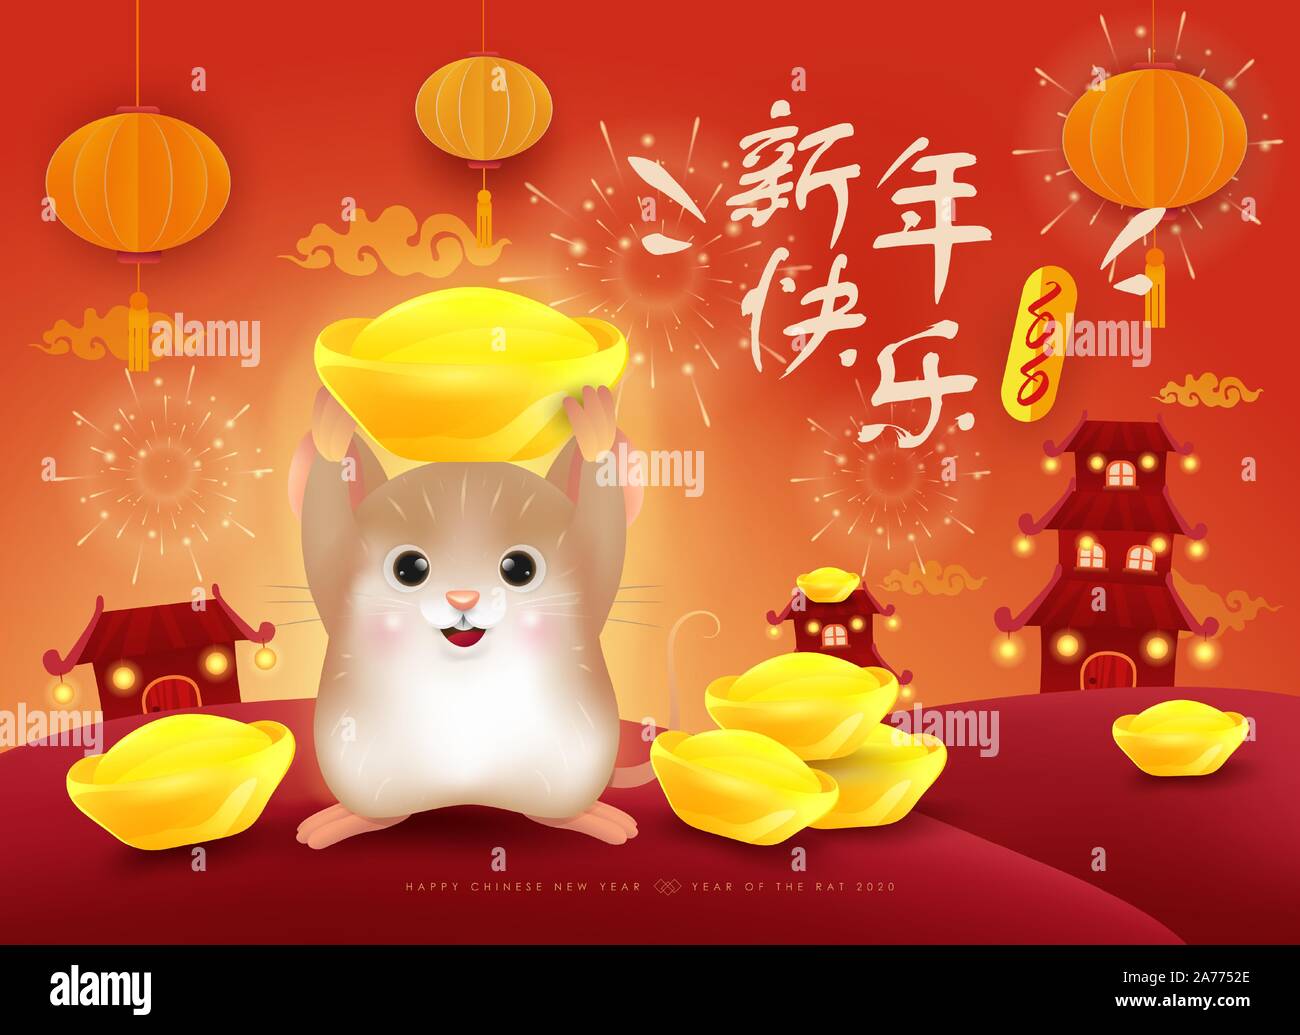 Bonne année 2020. Le Nouvel An chinois. L'année du rat. Traduction : Joyeux Nouvel An chinois. Illustration de Vecteur